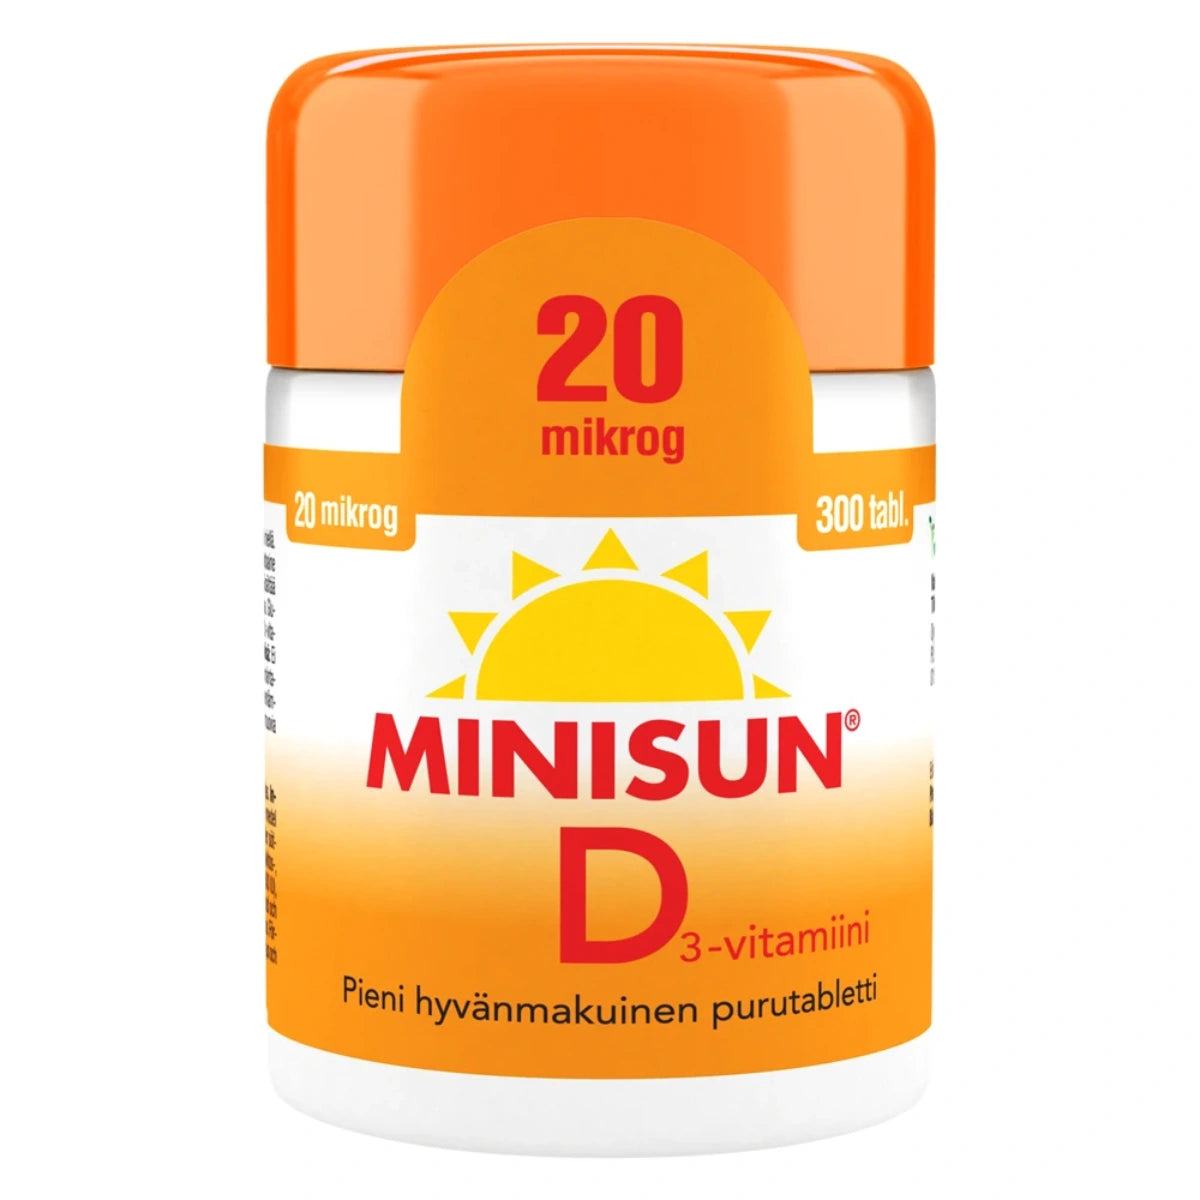 MINISUN D3-vitamiini 20 mikrog purutabletti 300 kpl pieni ja hyvänmakuinen purutabletti